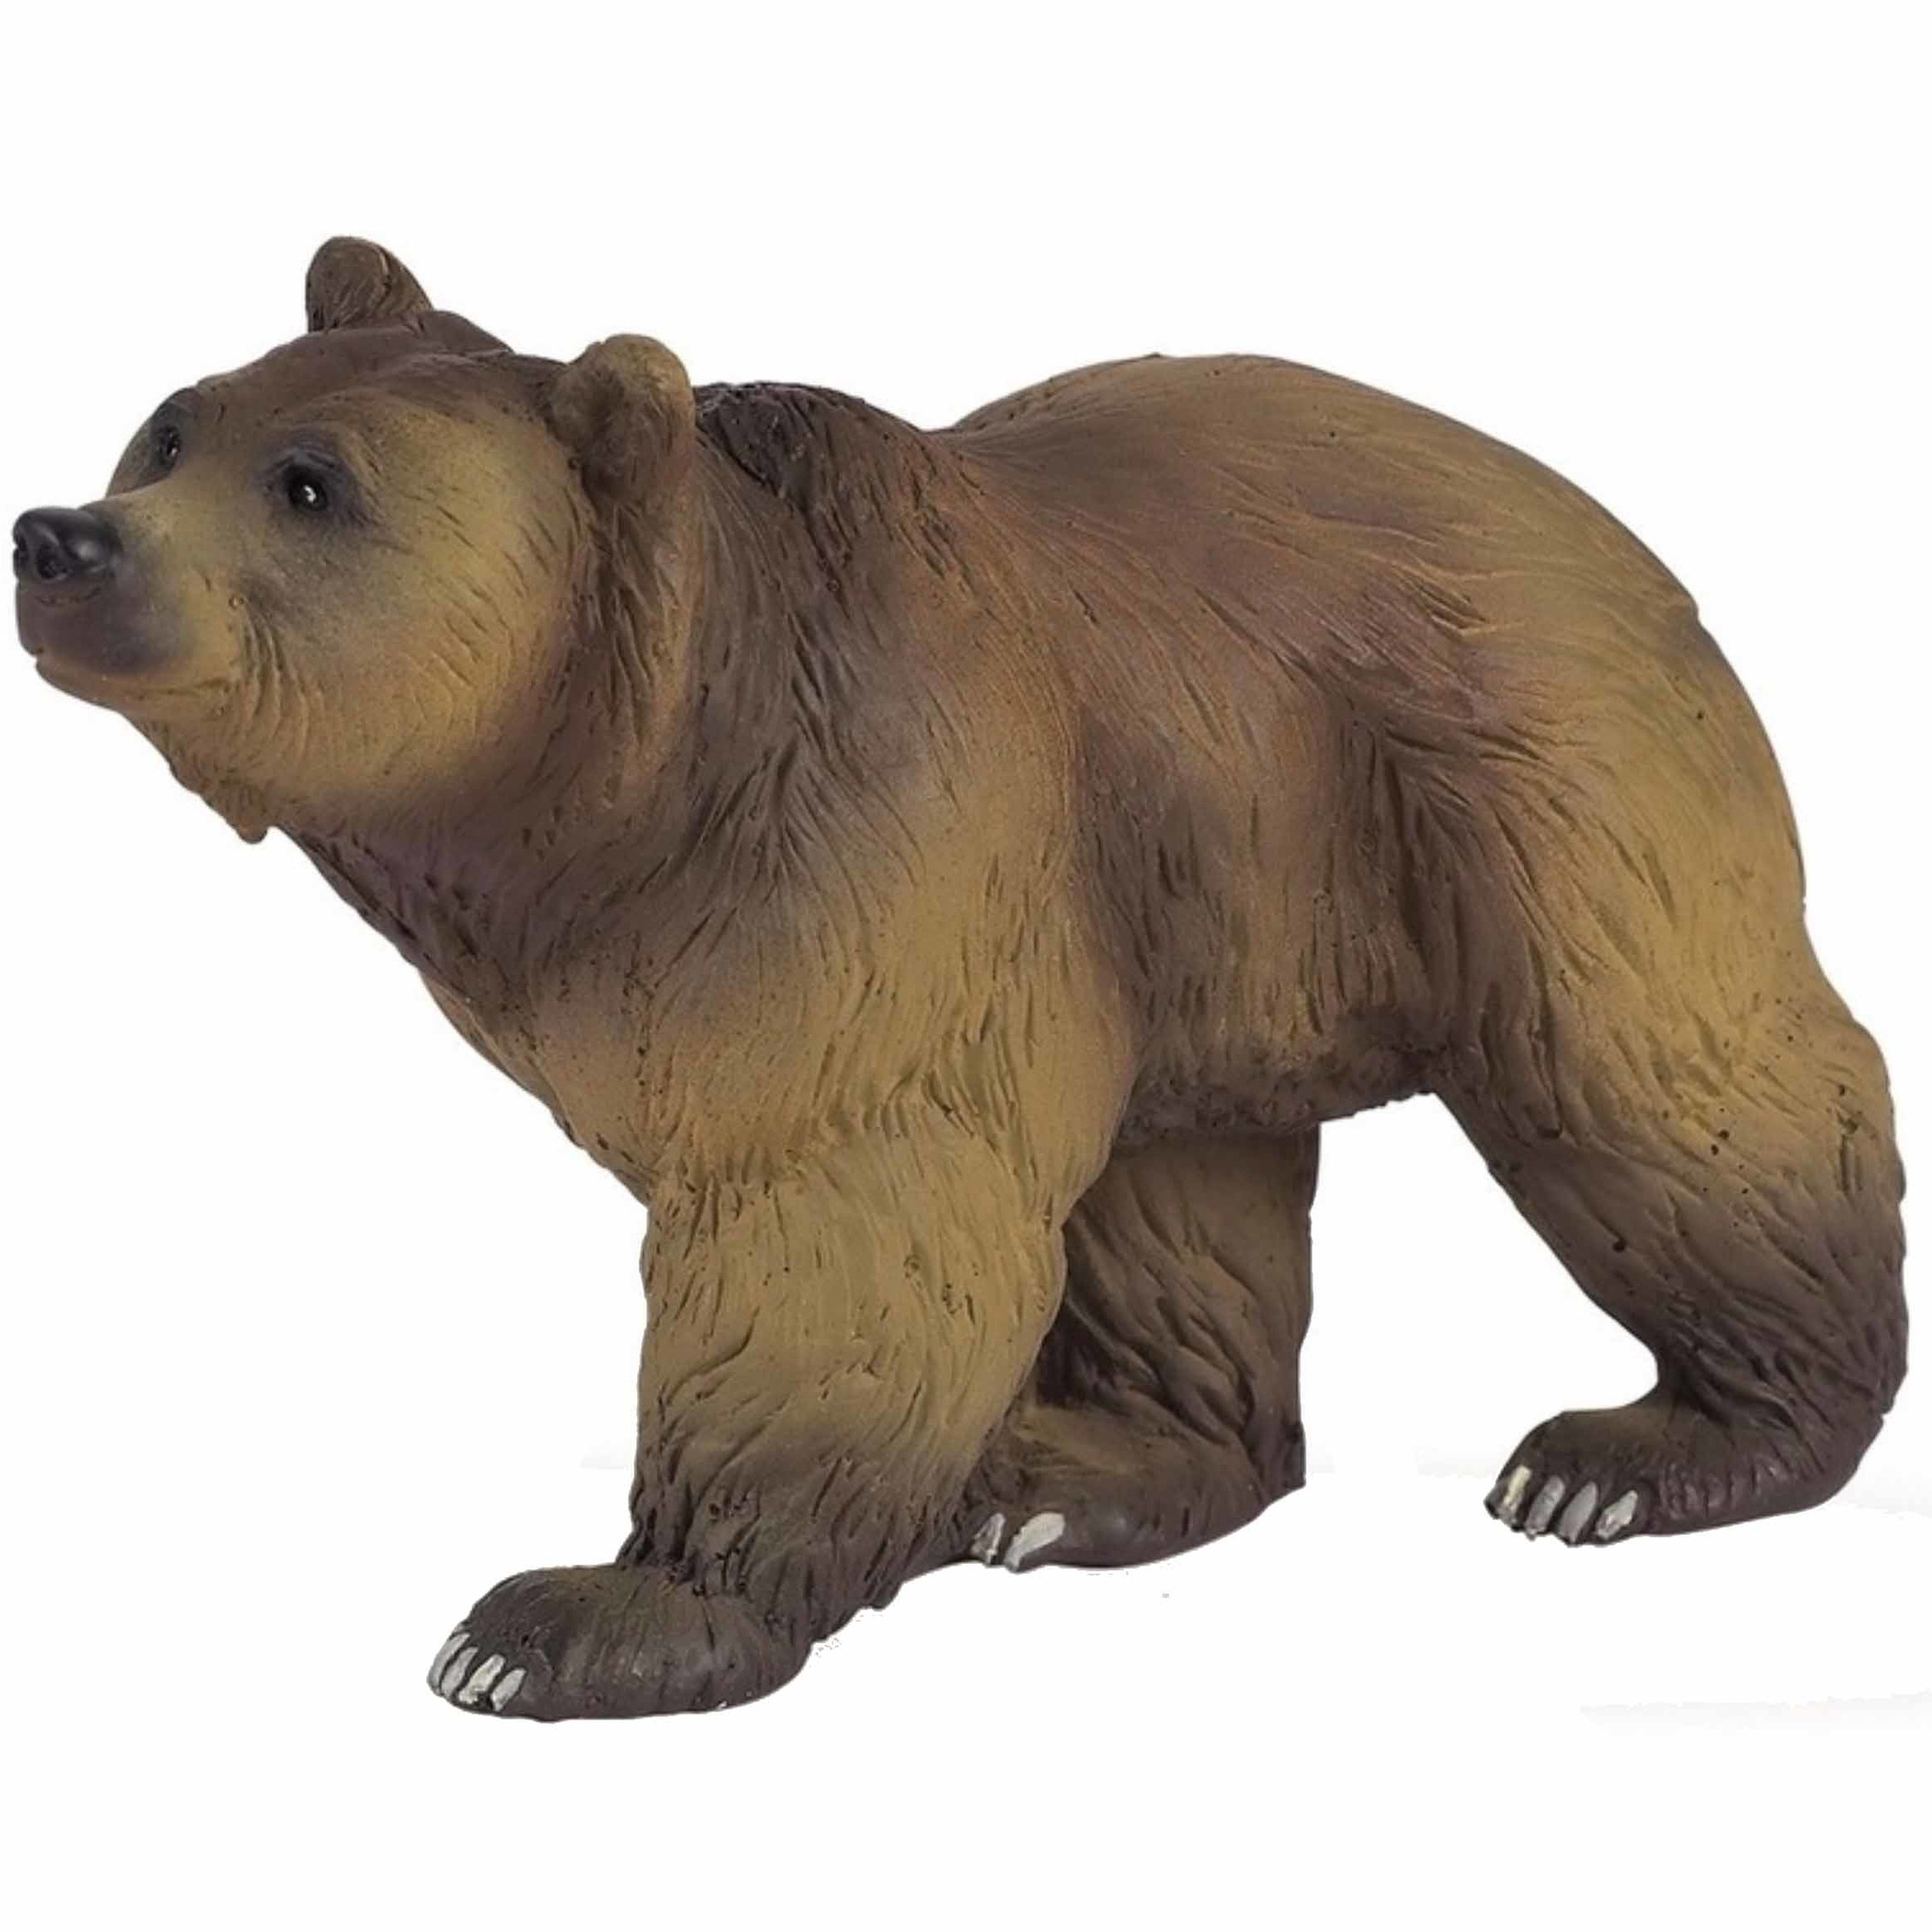 Bruine beer speeldiertje 11 cm